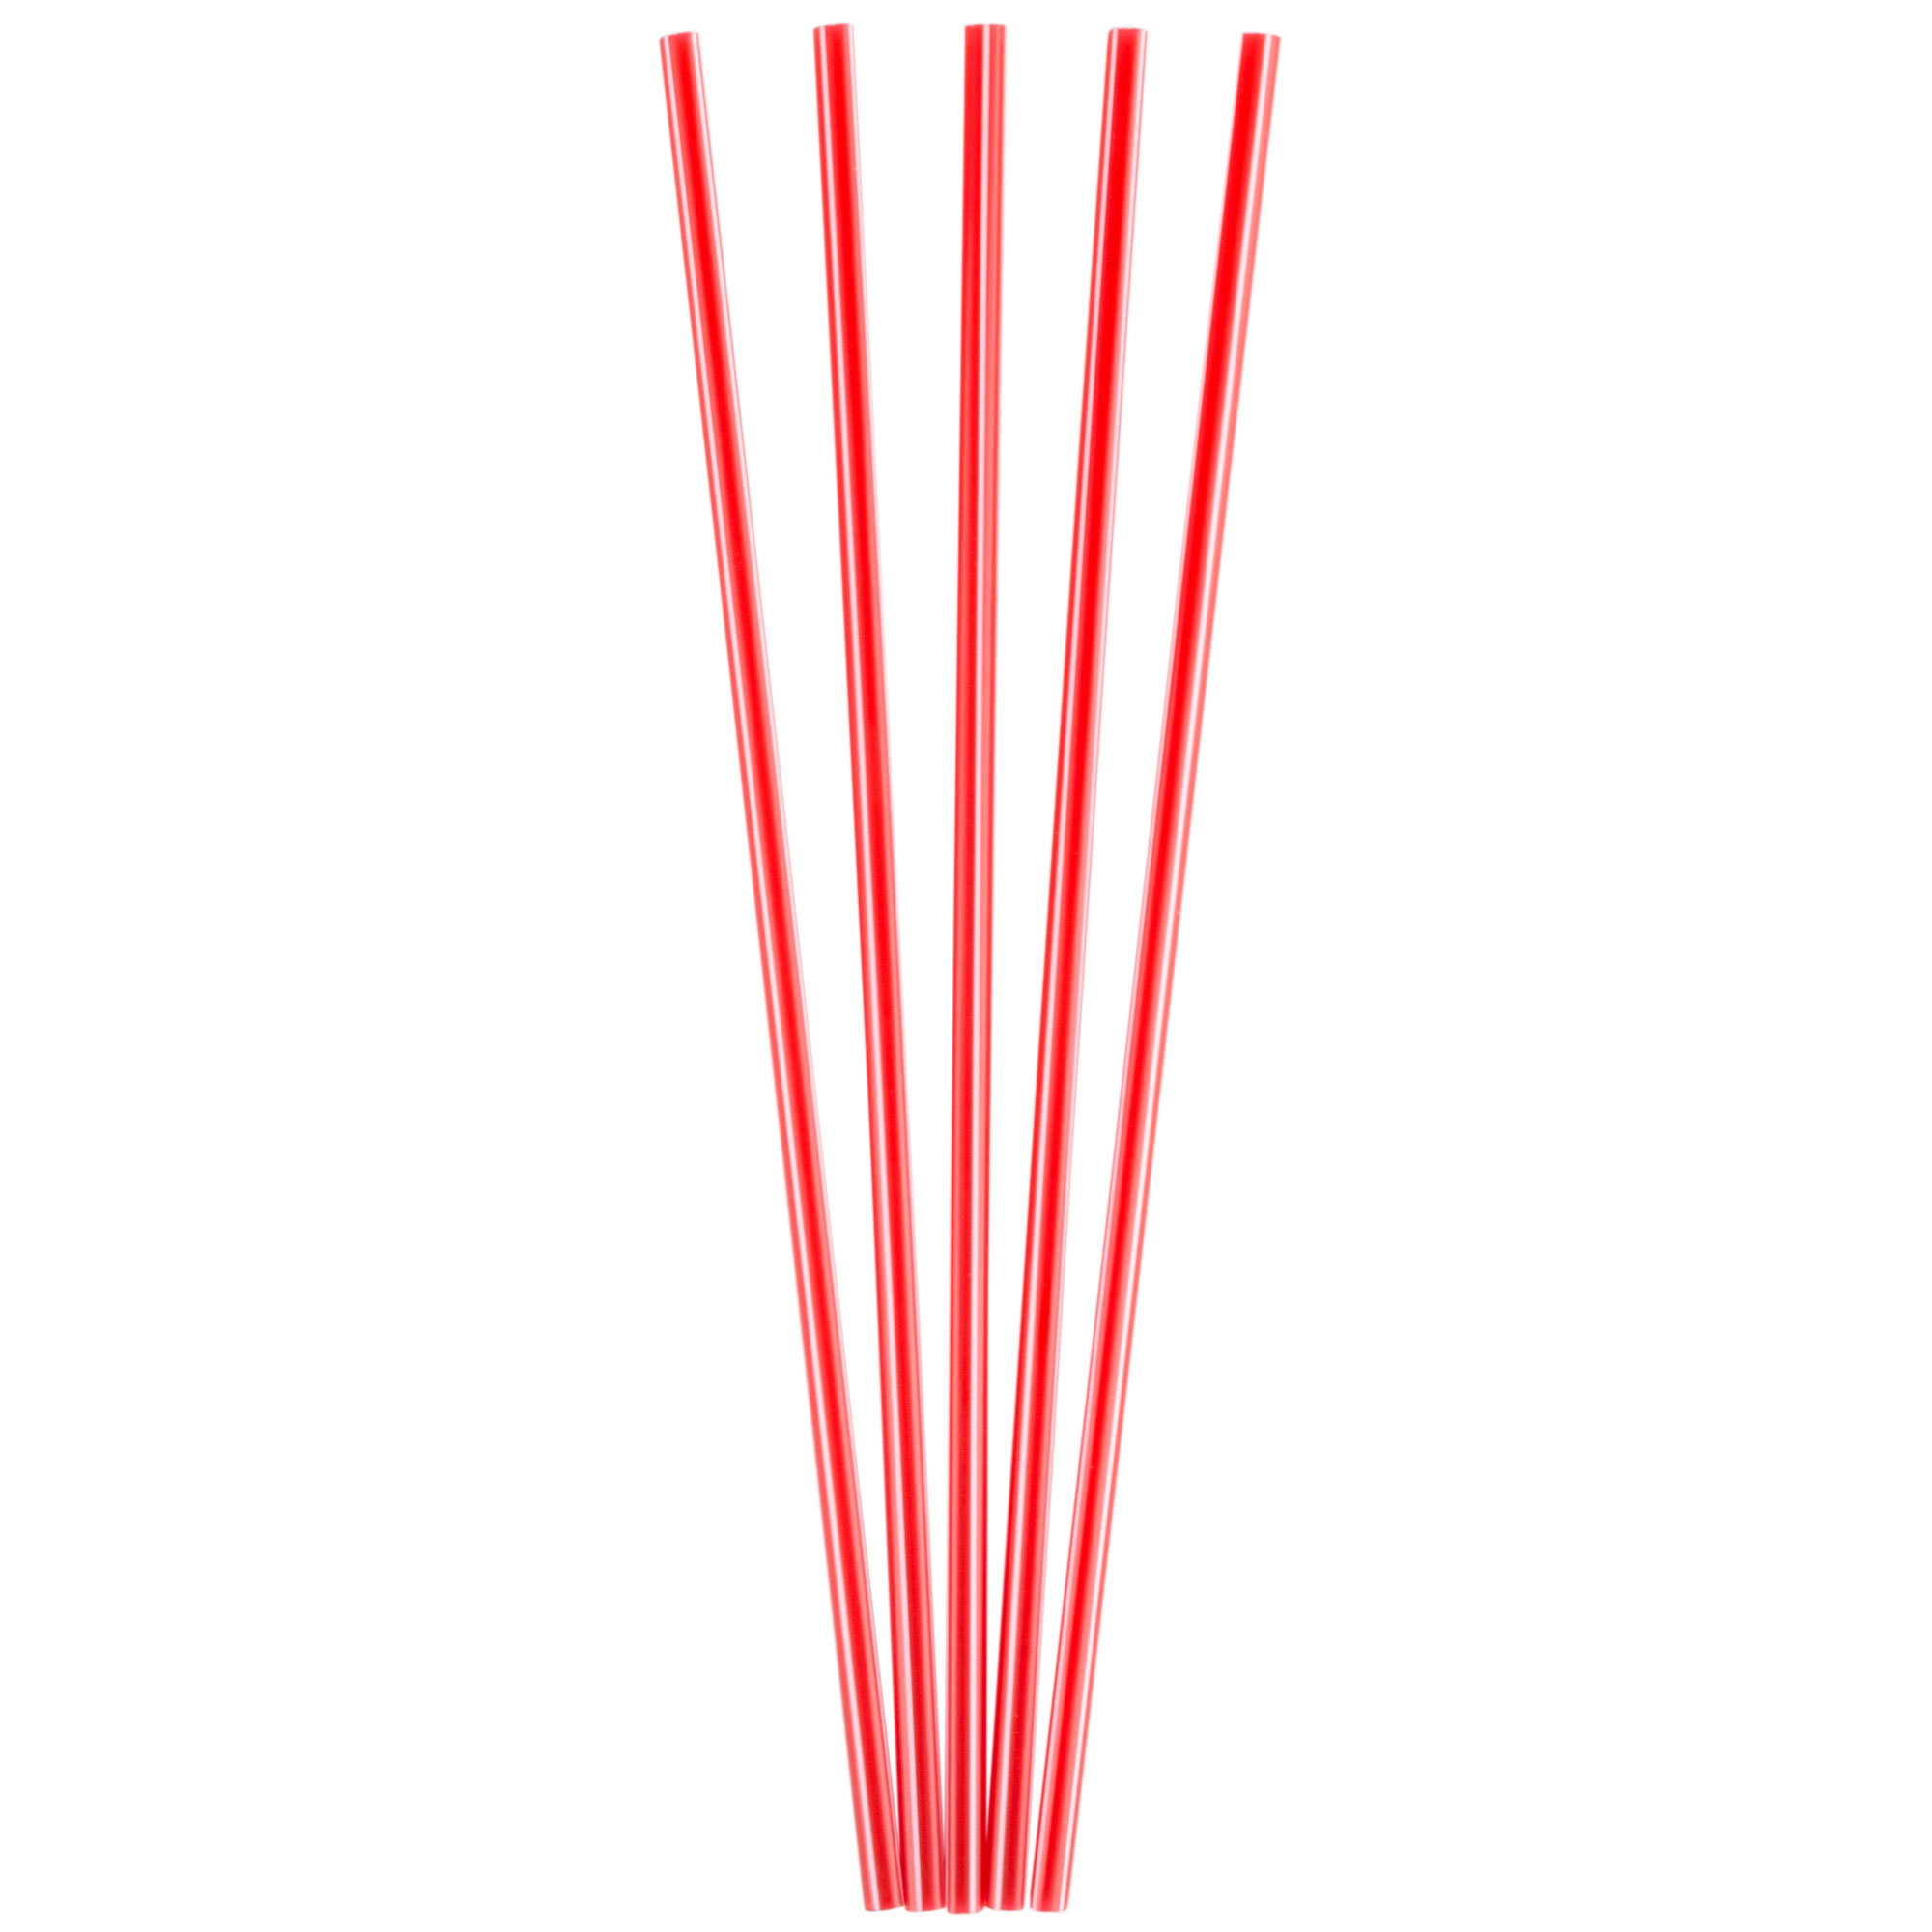 Red & Green Striped Stirring Straws